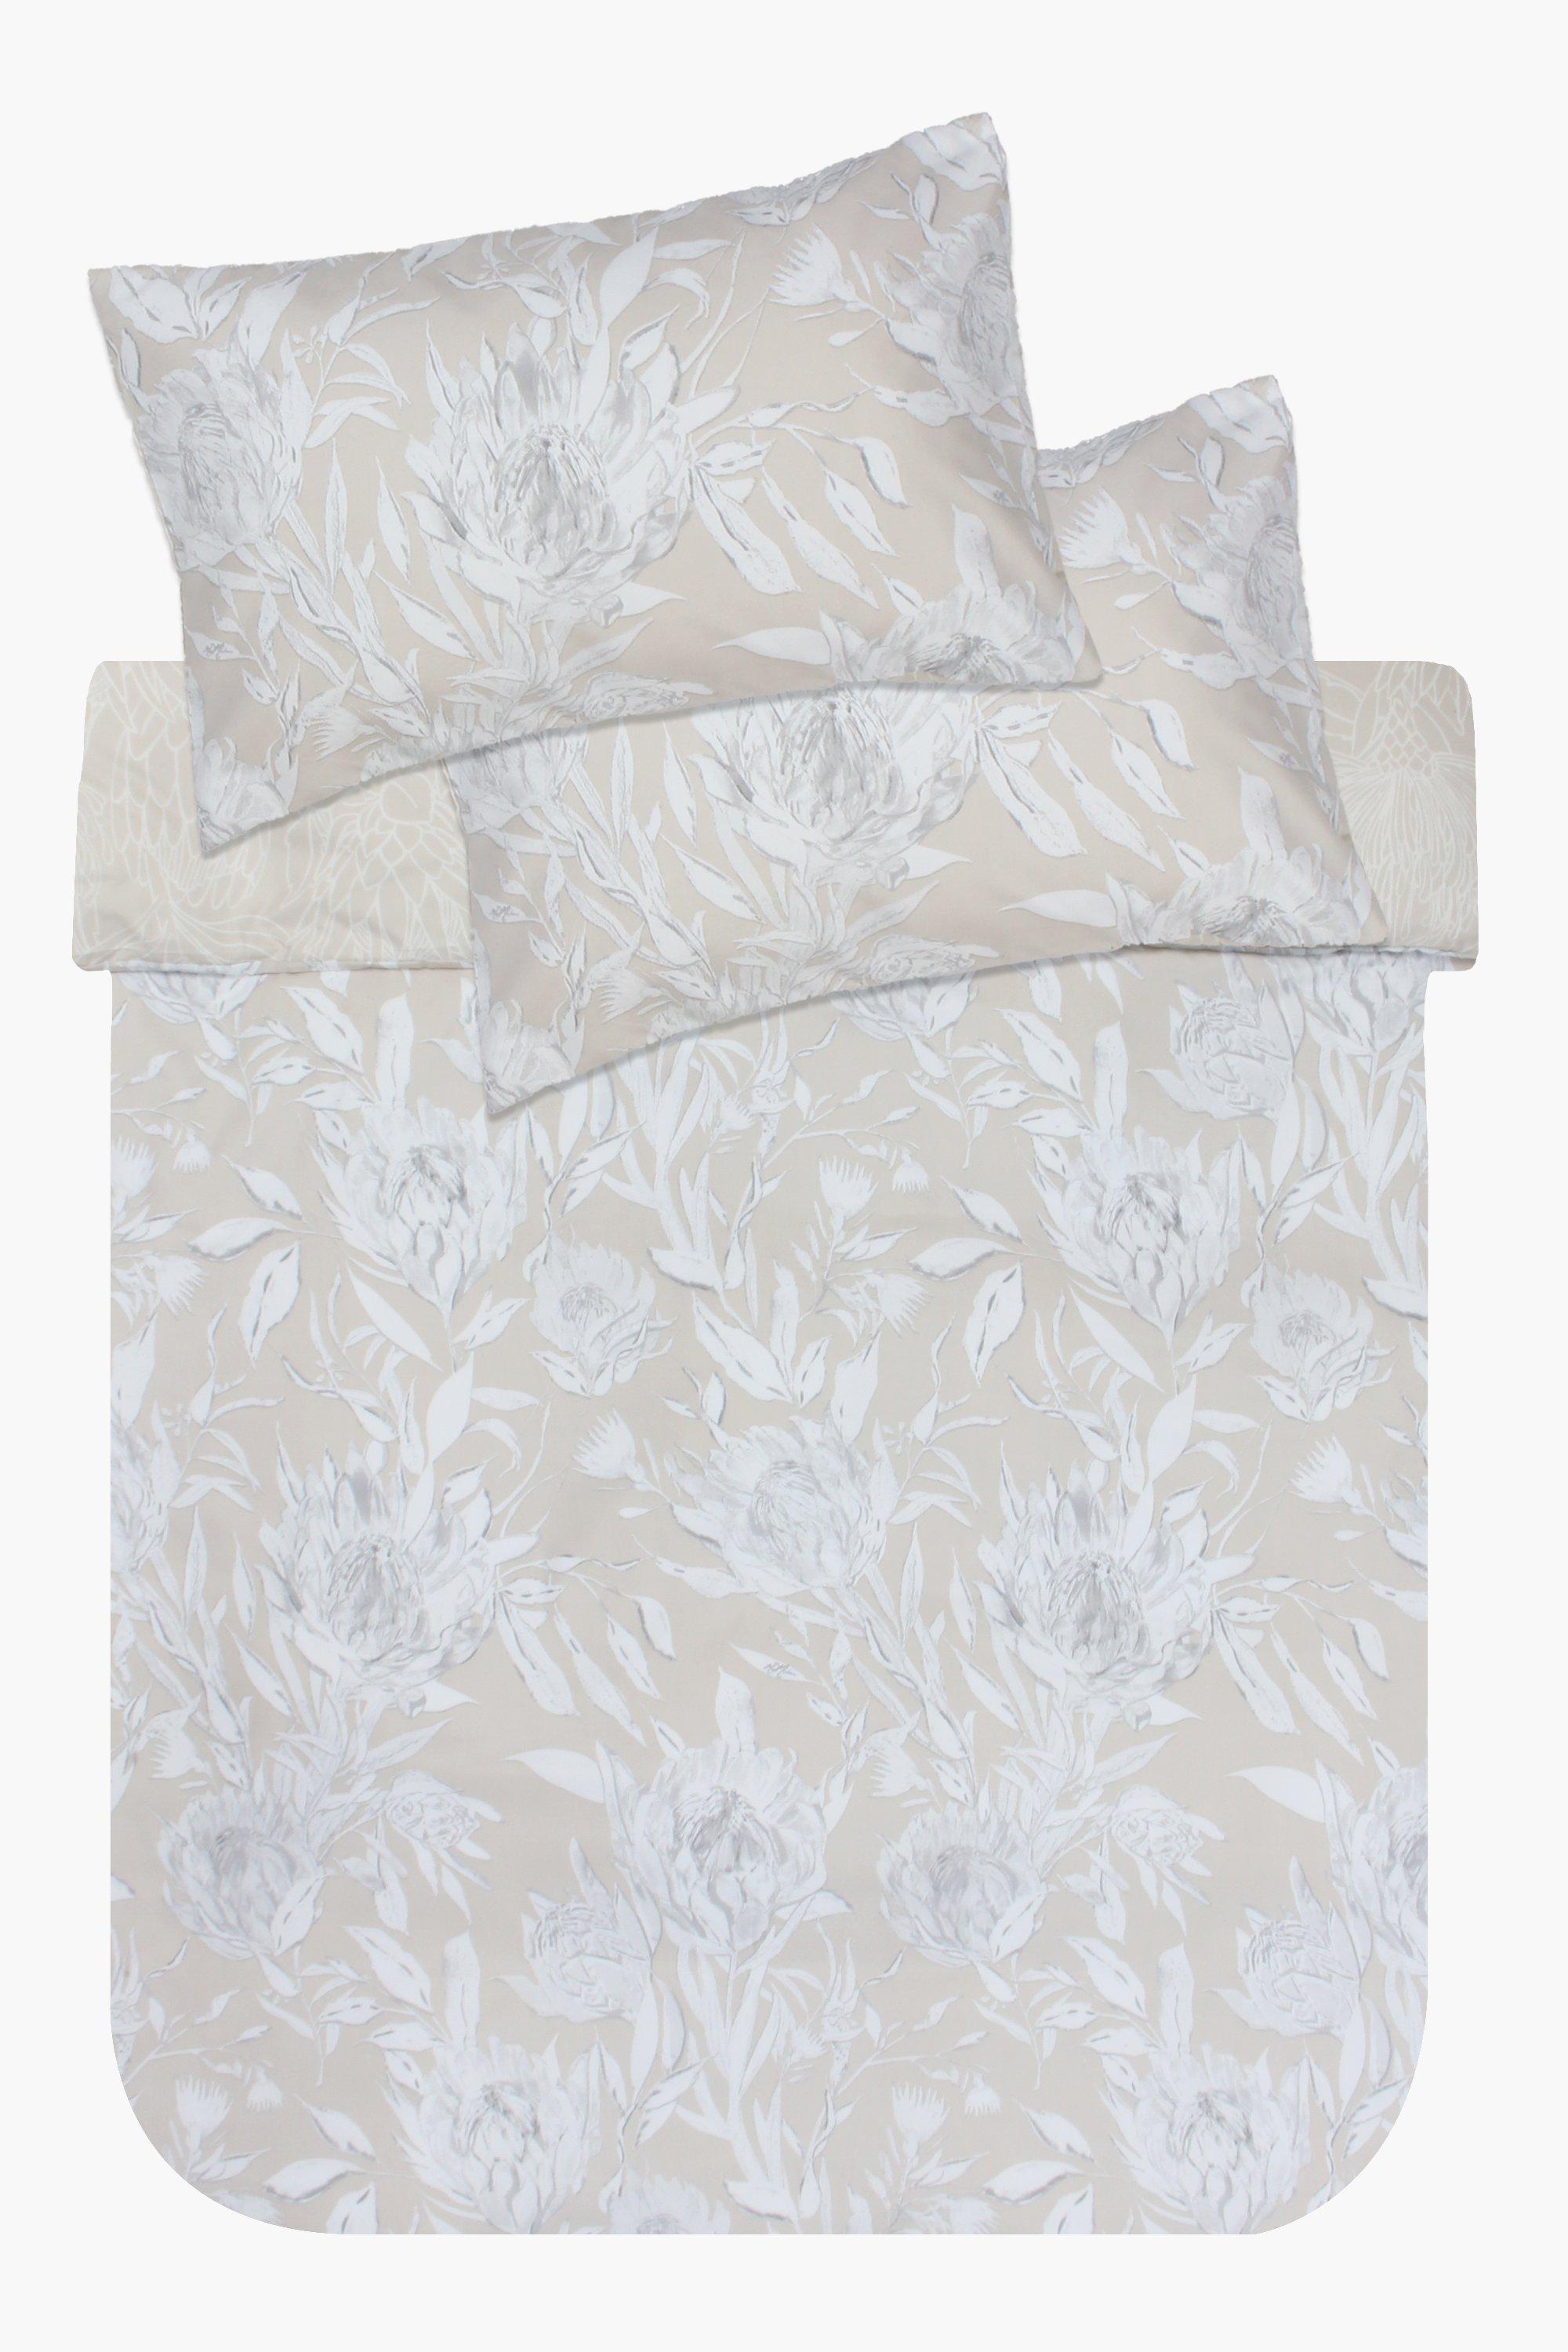 Soft Touch Floral Protea Duvet Cover Set